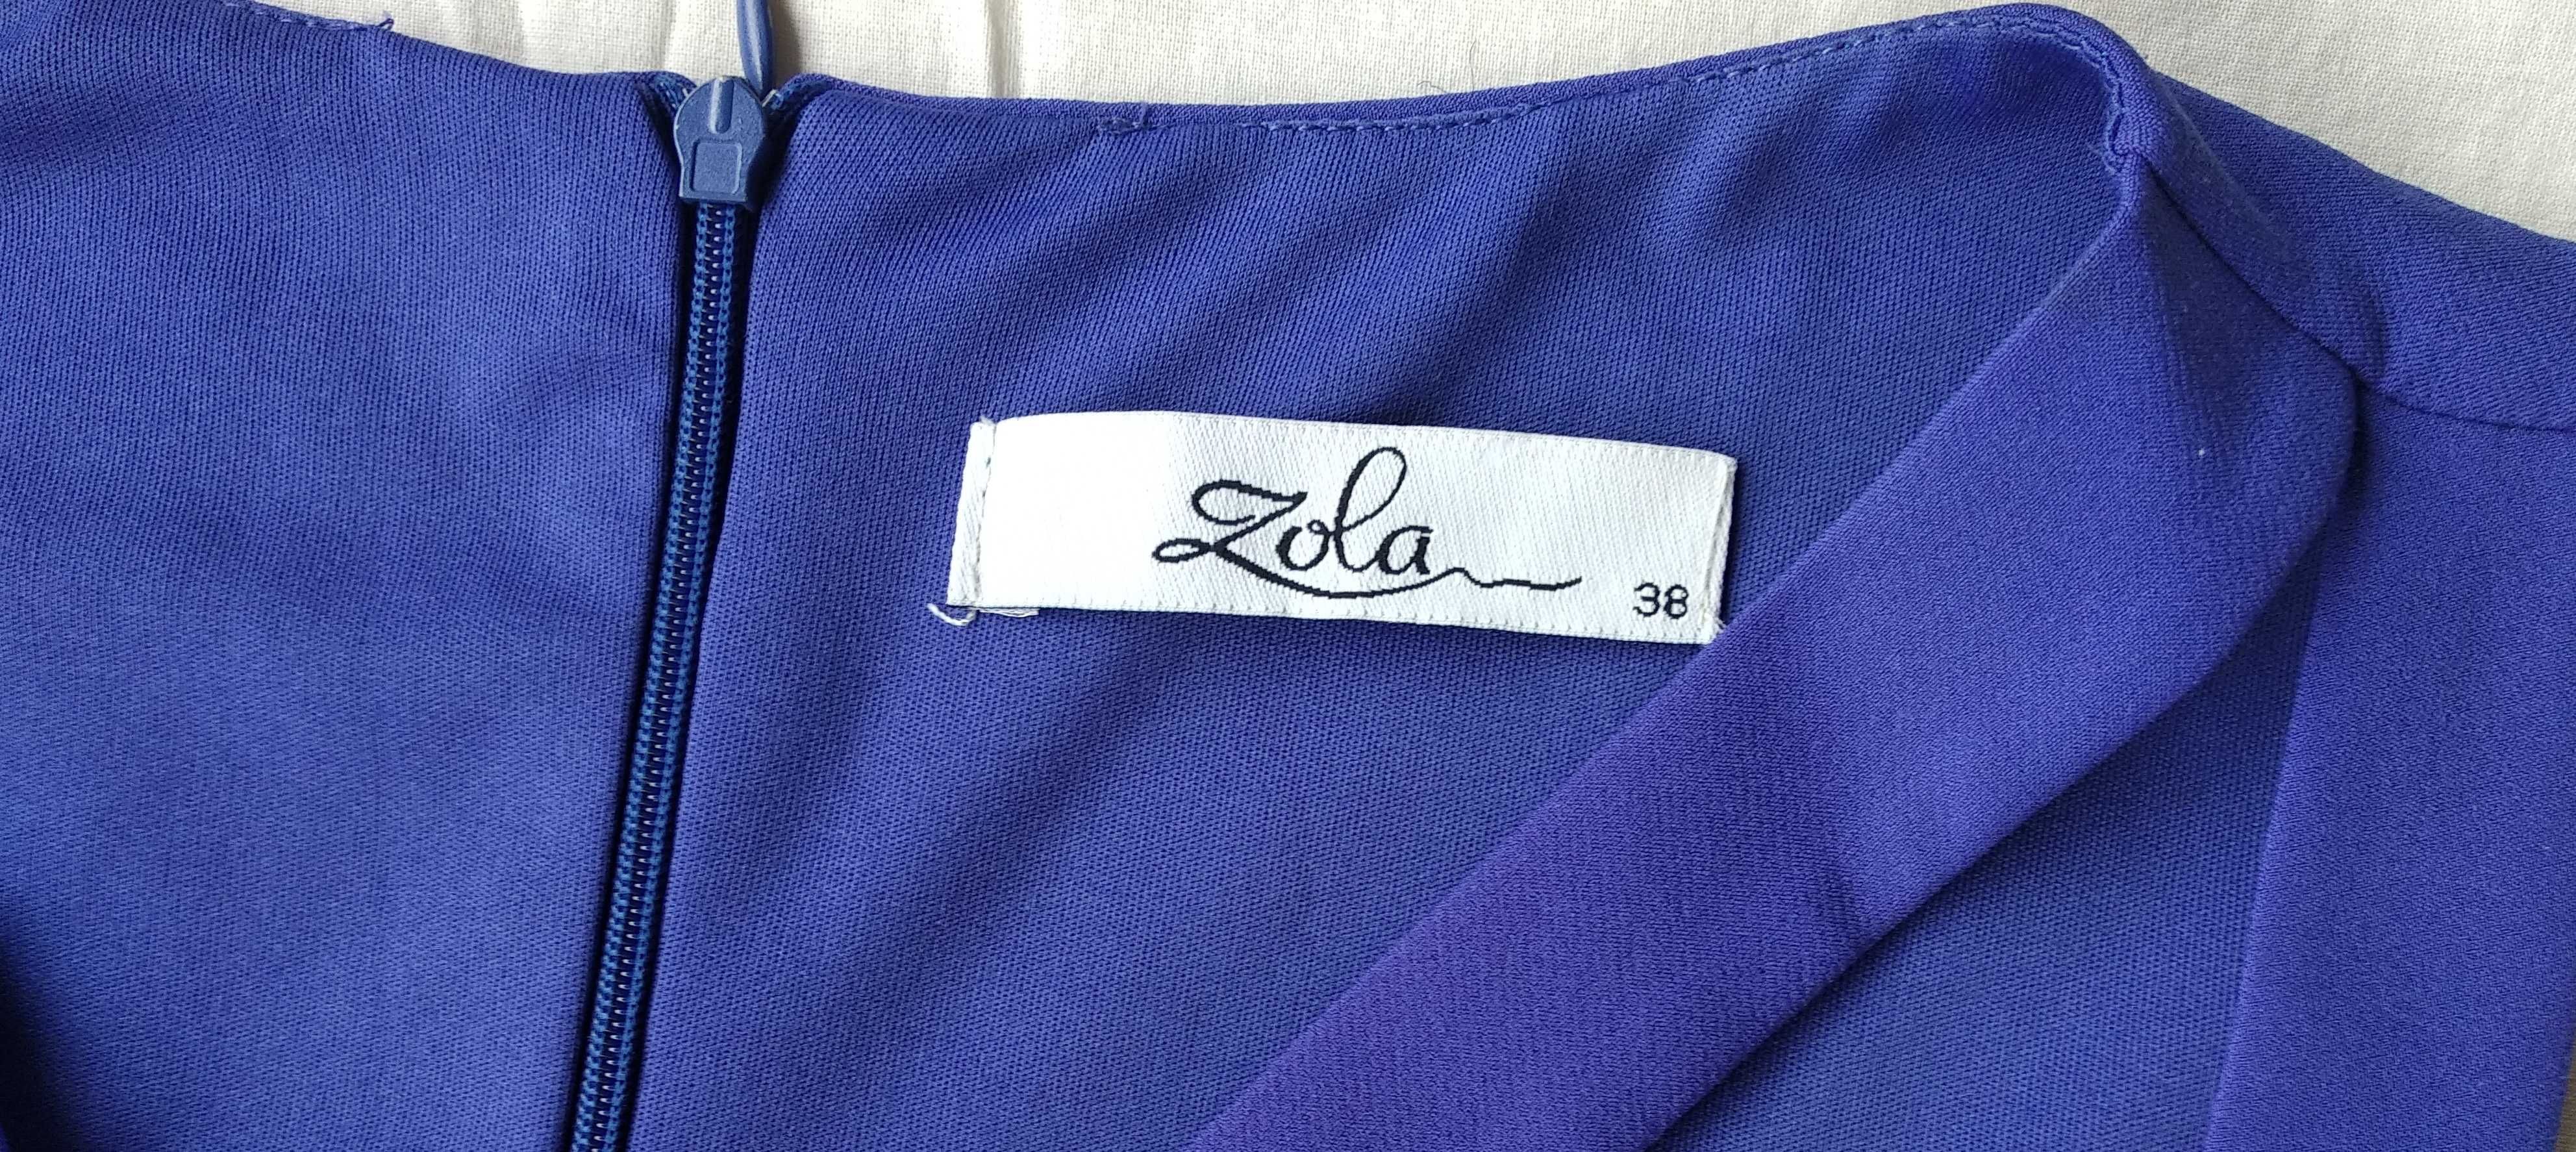 Платье фиолетовое, ZOLA, р-р 38, на 12 лет